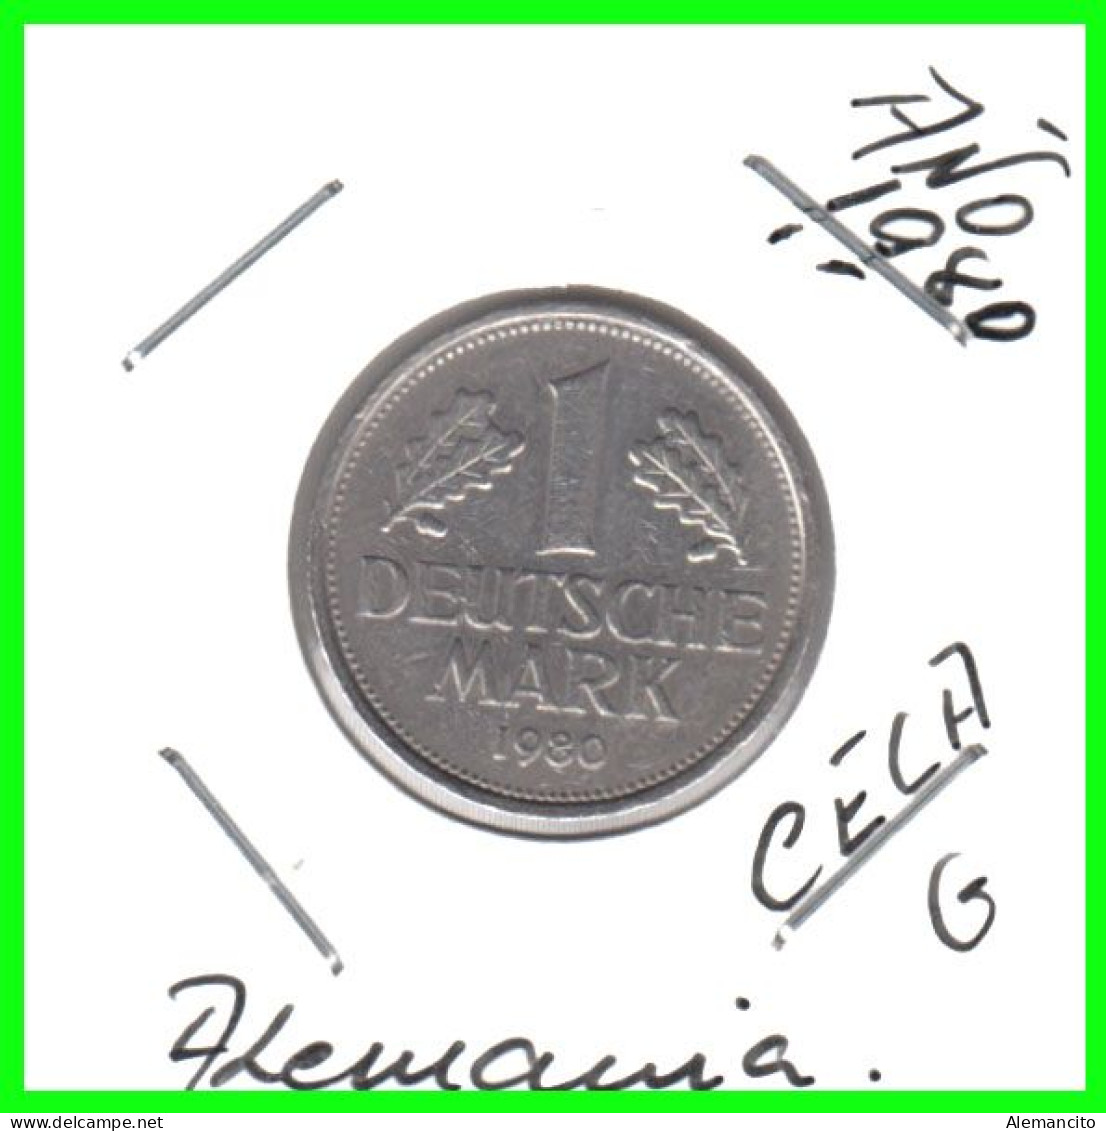 ALEMANIA FEDERAL - DEUTSCHLAND - GERMANY –  MONEDA DE LA REPUBLICA FEDERAL DE ALEMANIA DE 1.00 DM-DEL AÑO 1980 CECA-G - 1 Mark